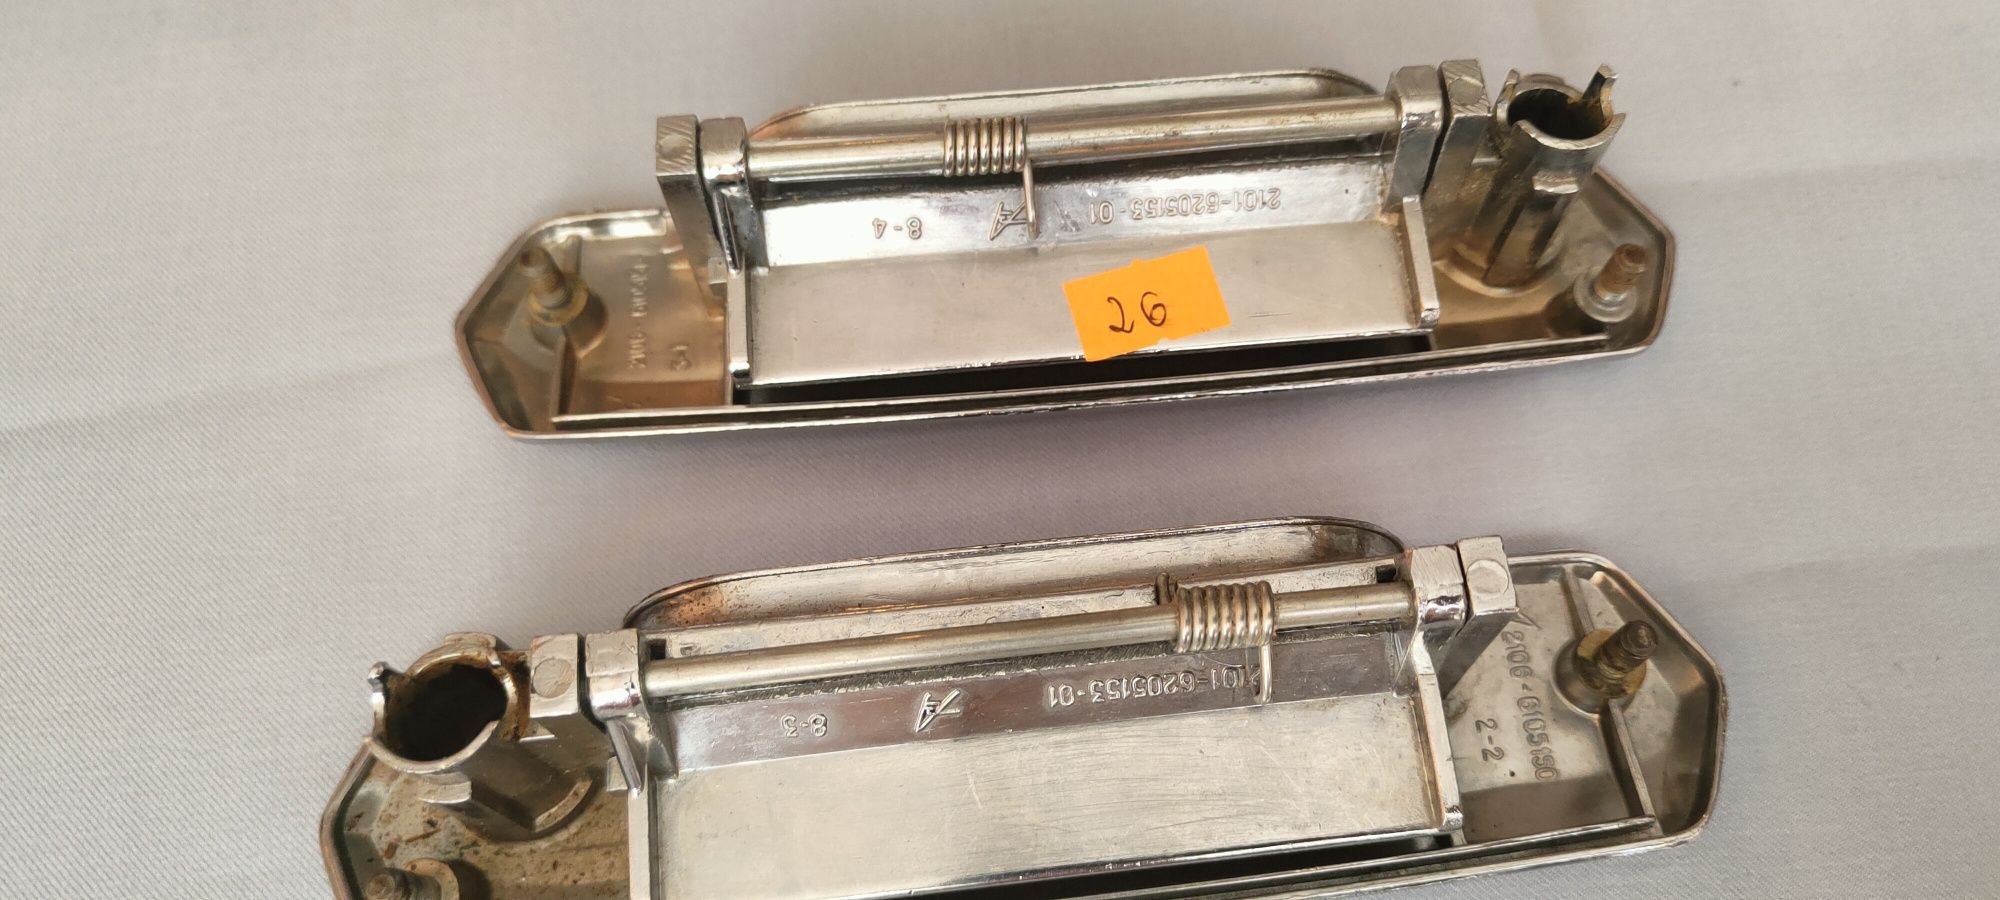 Oryginalne klamki do Fiata 125 p bez kluczyków